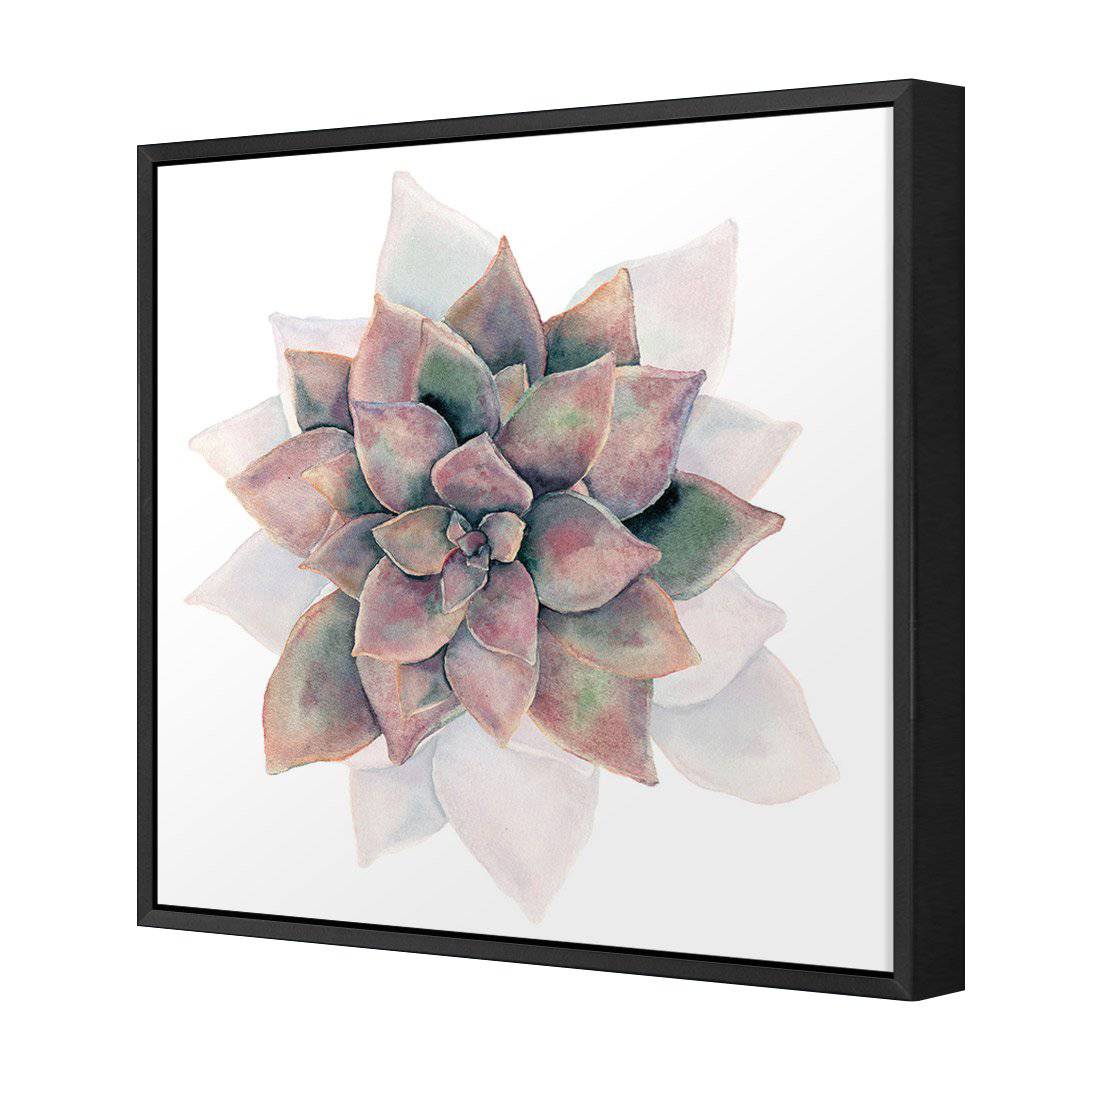 Succulent Rosette Canvas Art-Canvas-Wall Art Designs-30x30cm-Canvas - Black Frame-Wall Art Designs